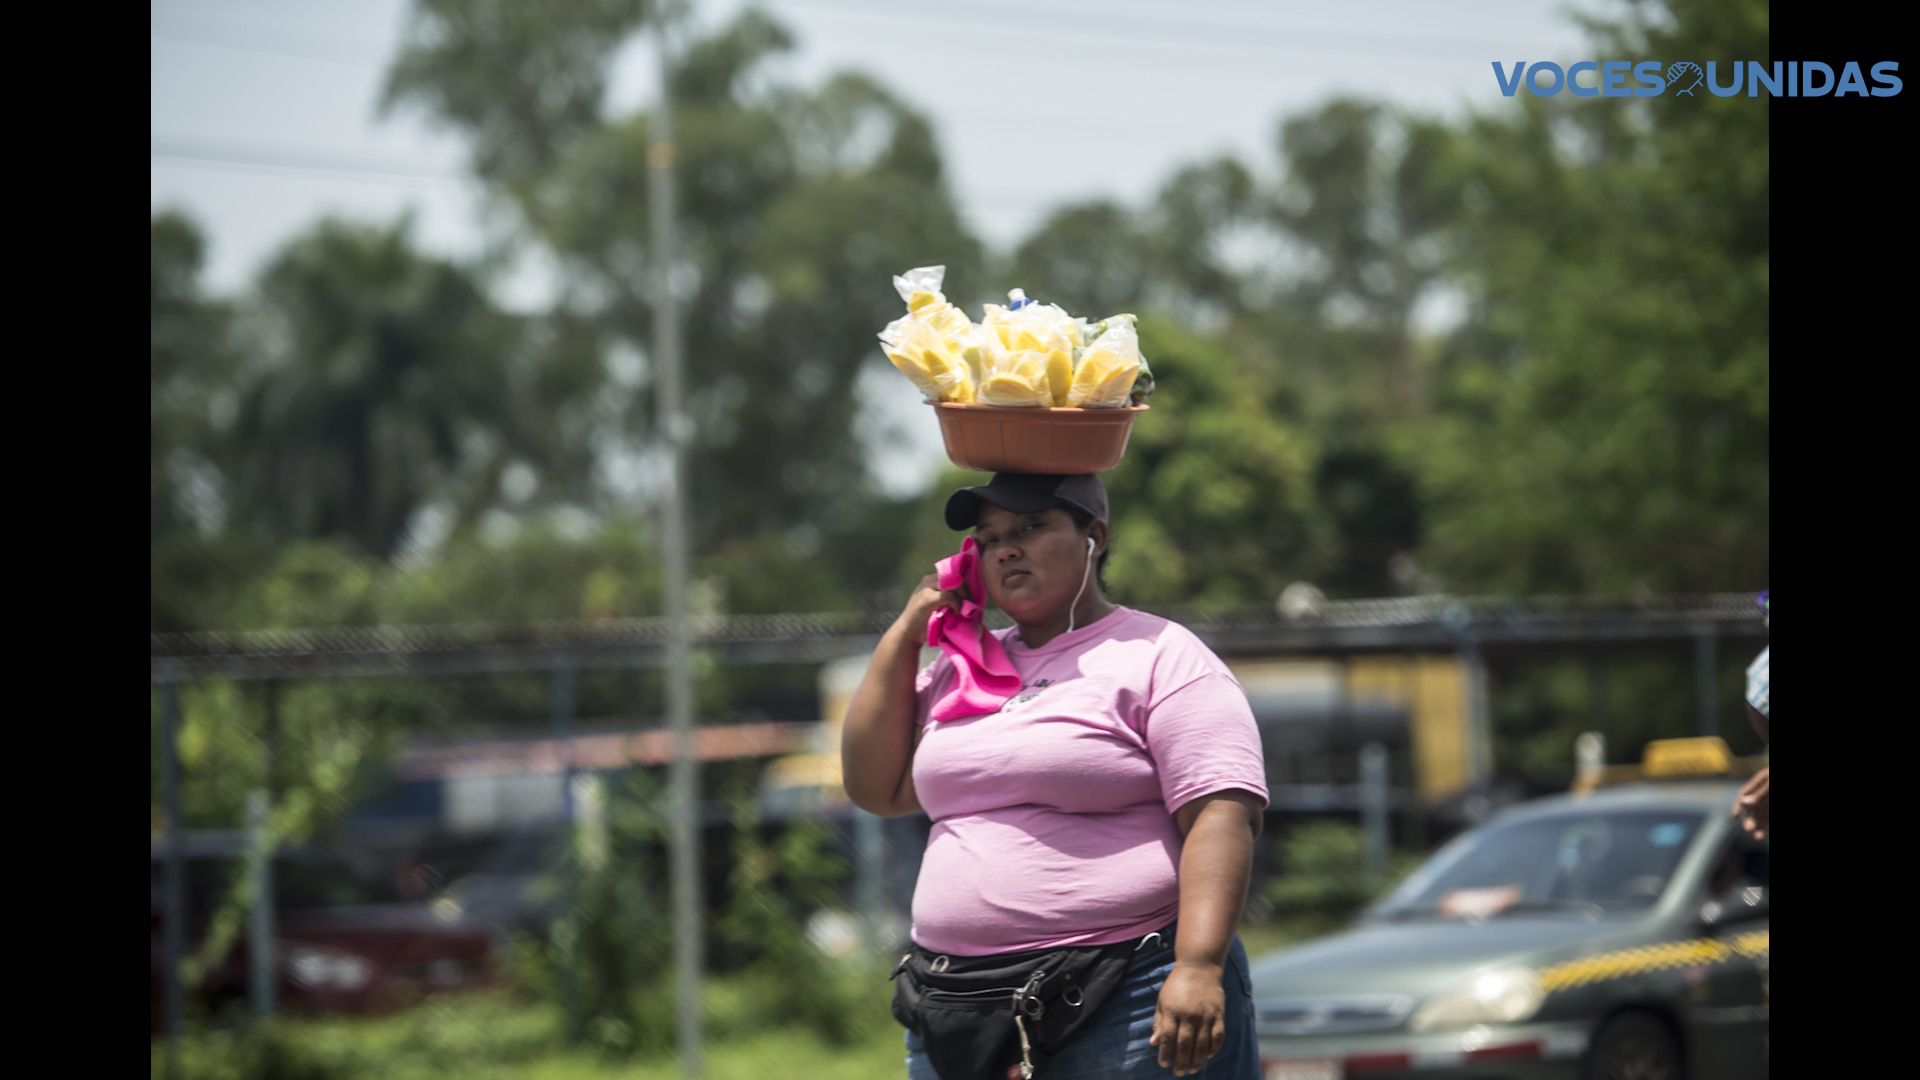 En Nicaragua, los trabajadores informales representan el 80% de la fuerza laboral  y  ganan 15% menos que los formales. Los salarios no cubren ni la mitad de la canasta básica.